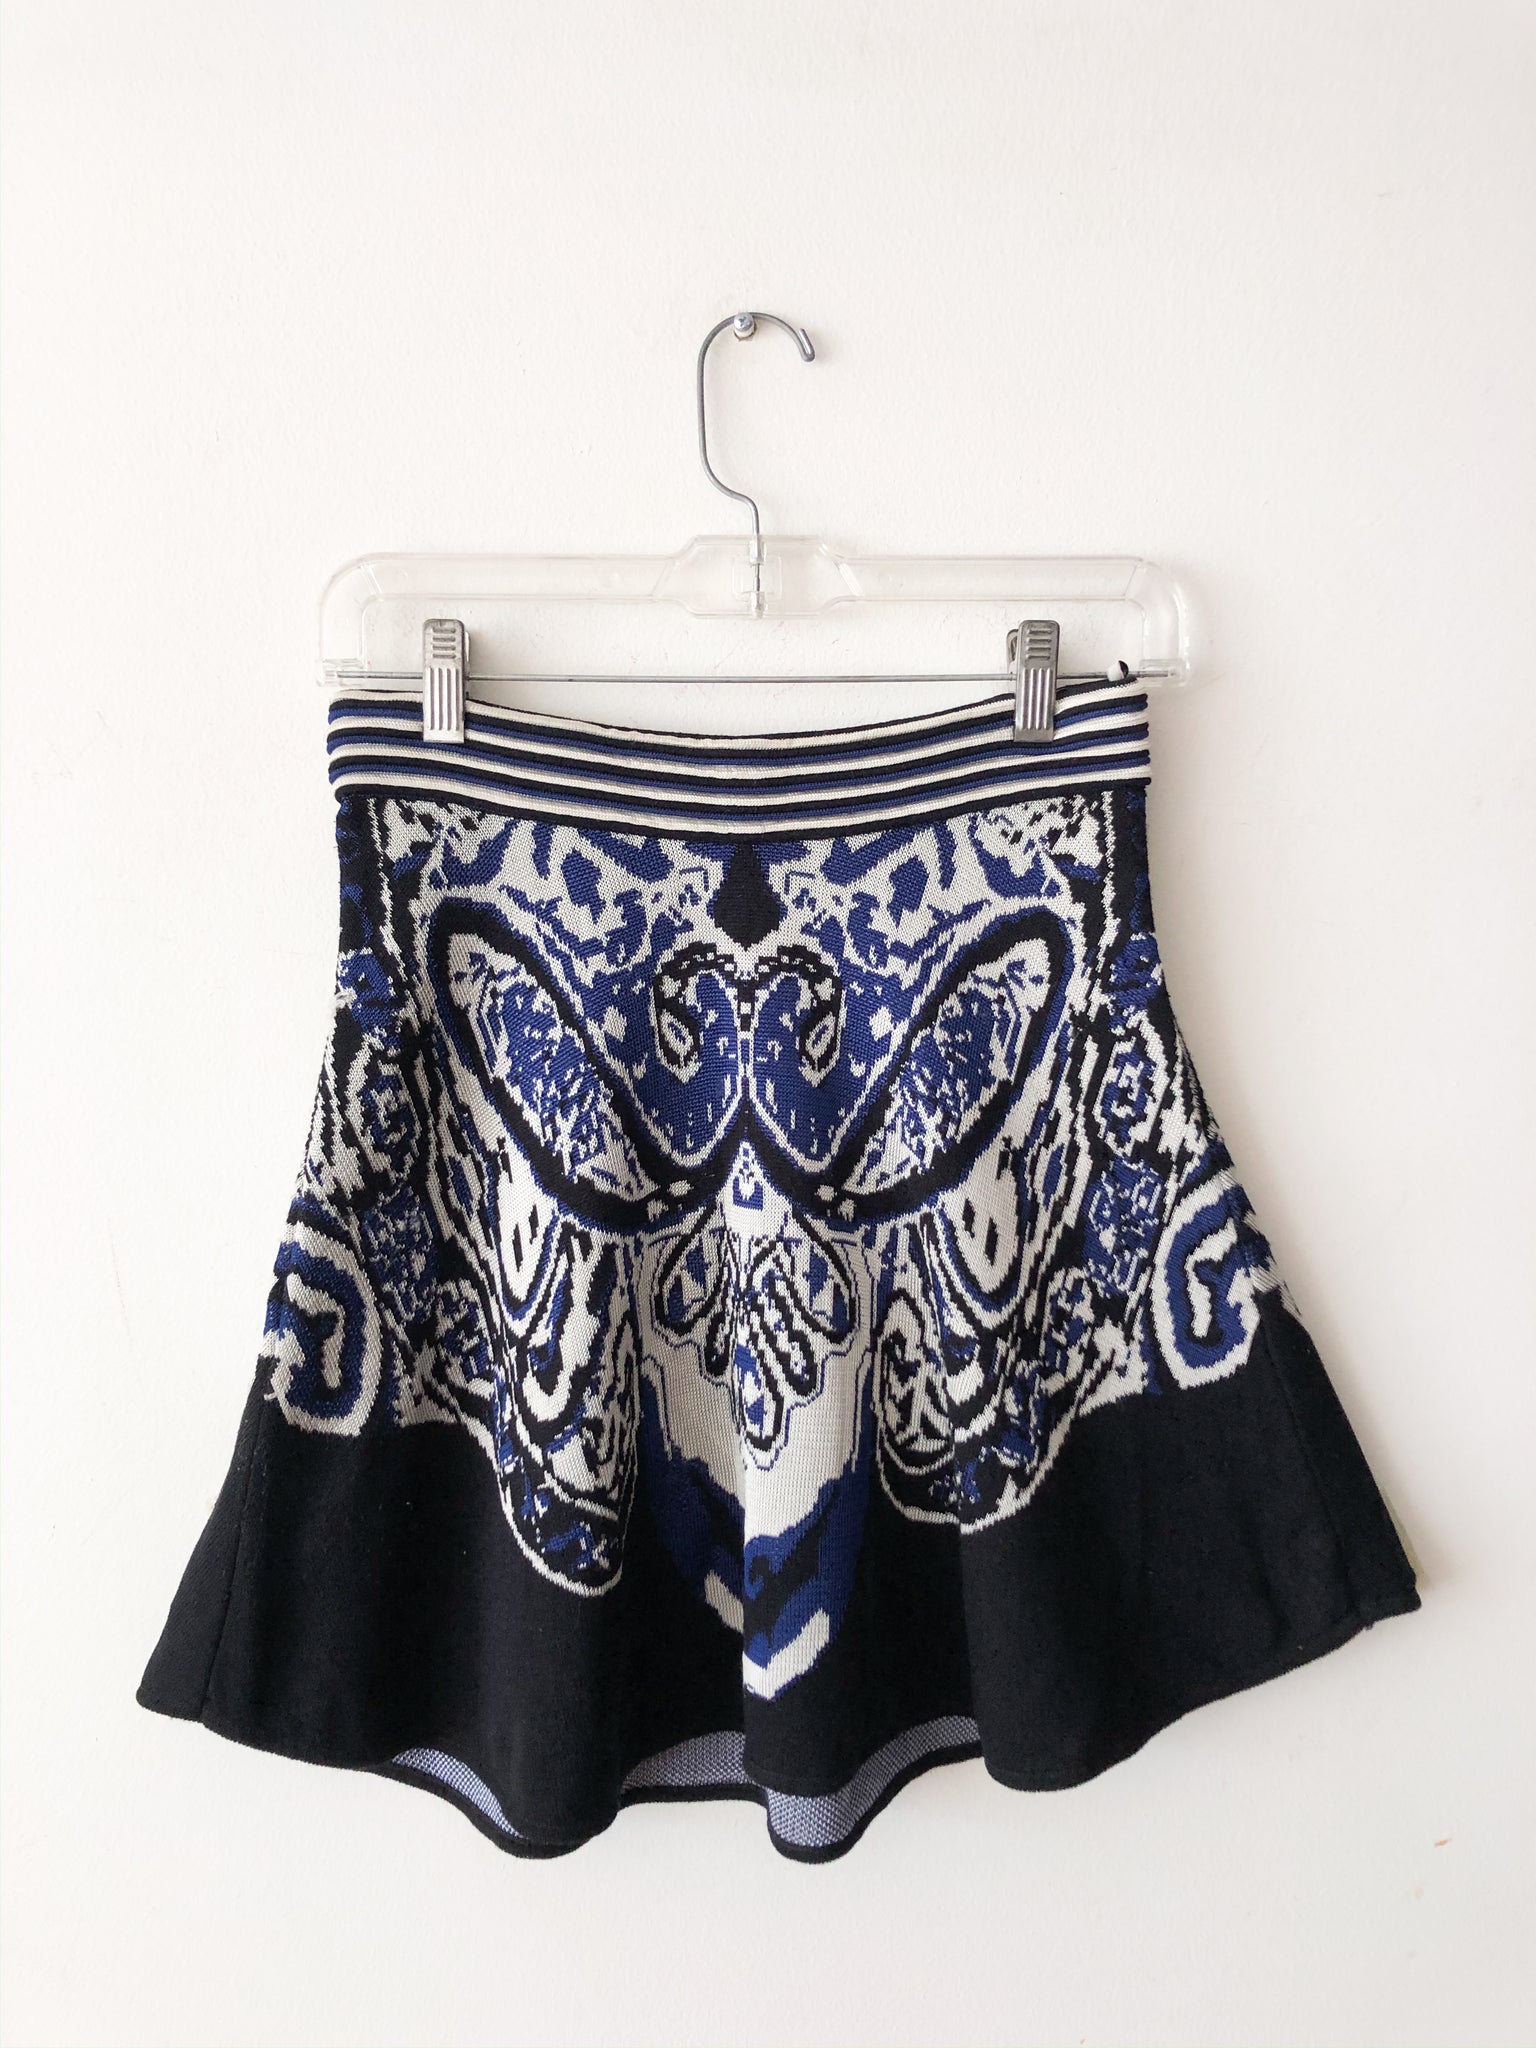 Knitted Burgoise Boheme Mini Skirt  / Pre-loved